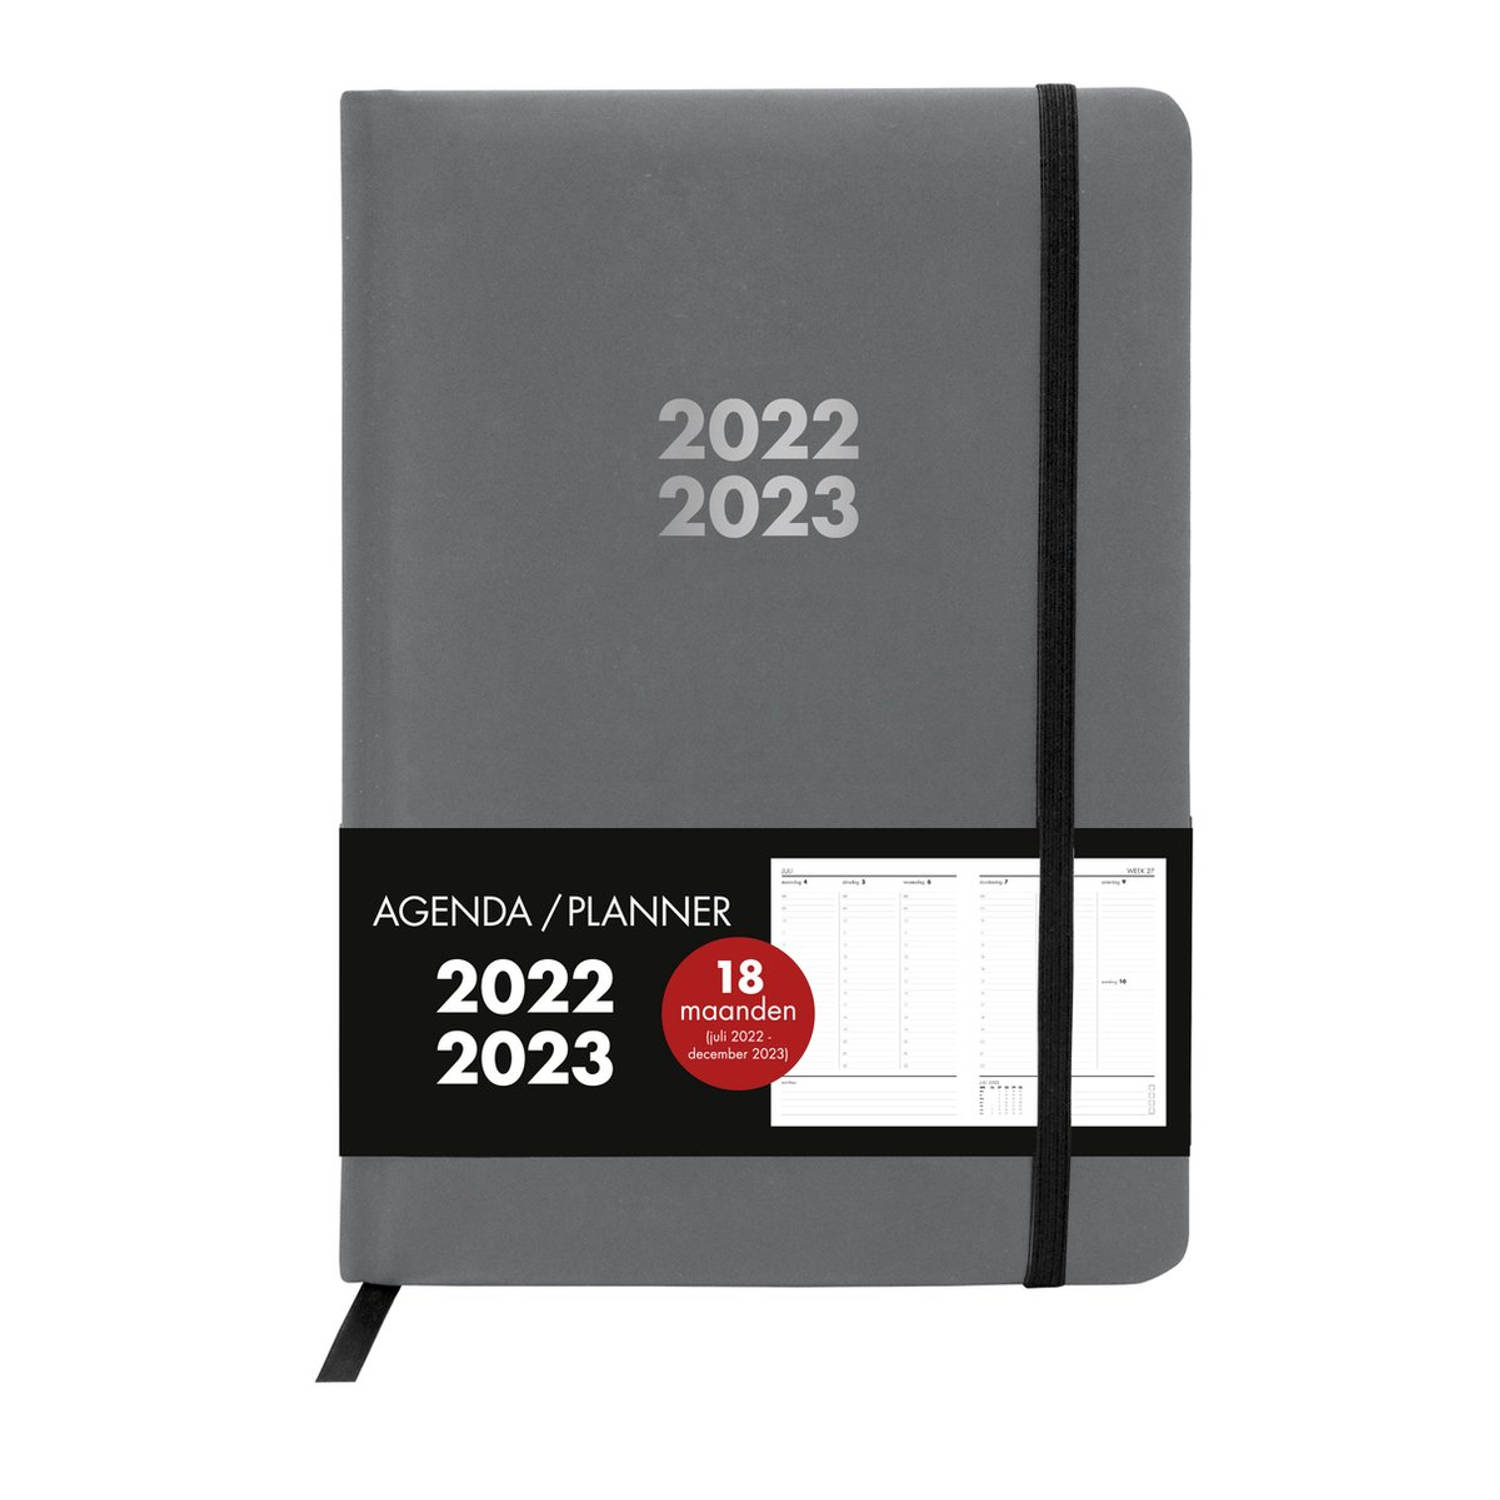 Agenda / planner 18 maanden Juli 2022 - december 2023 A5 grijs